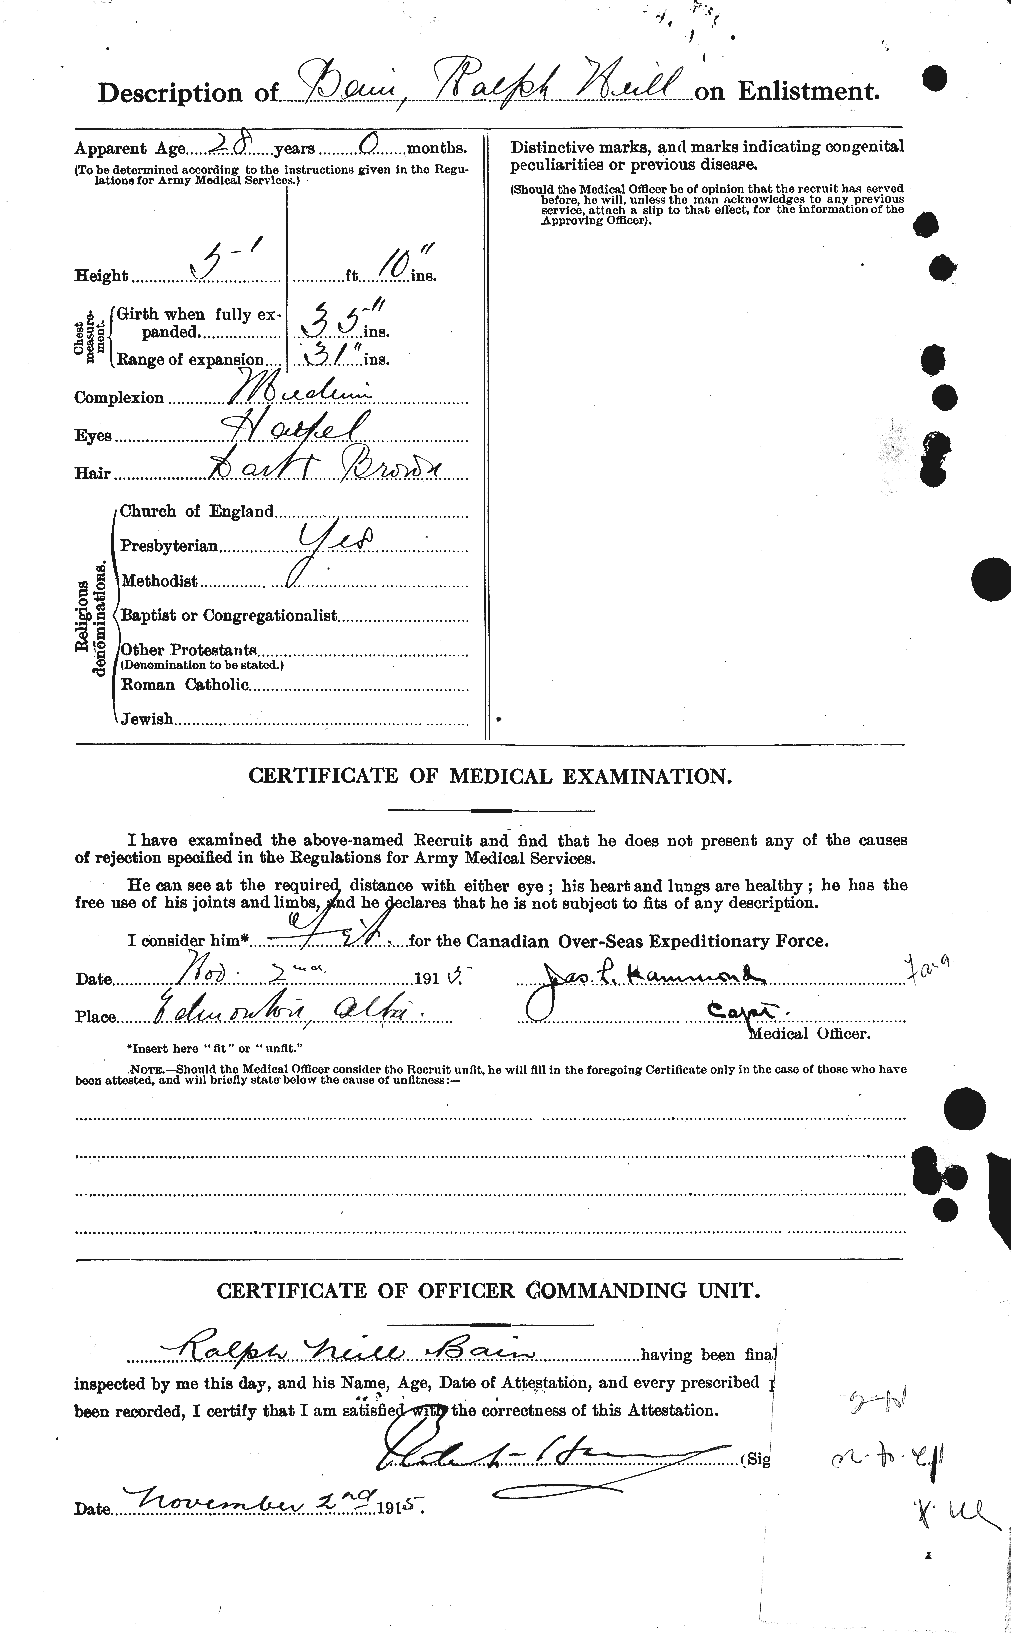 Dossiers du Personnel de la Première Guerre mondiale - CEC 225102b